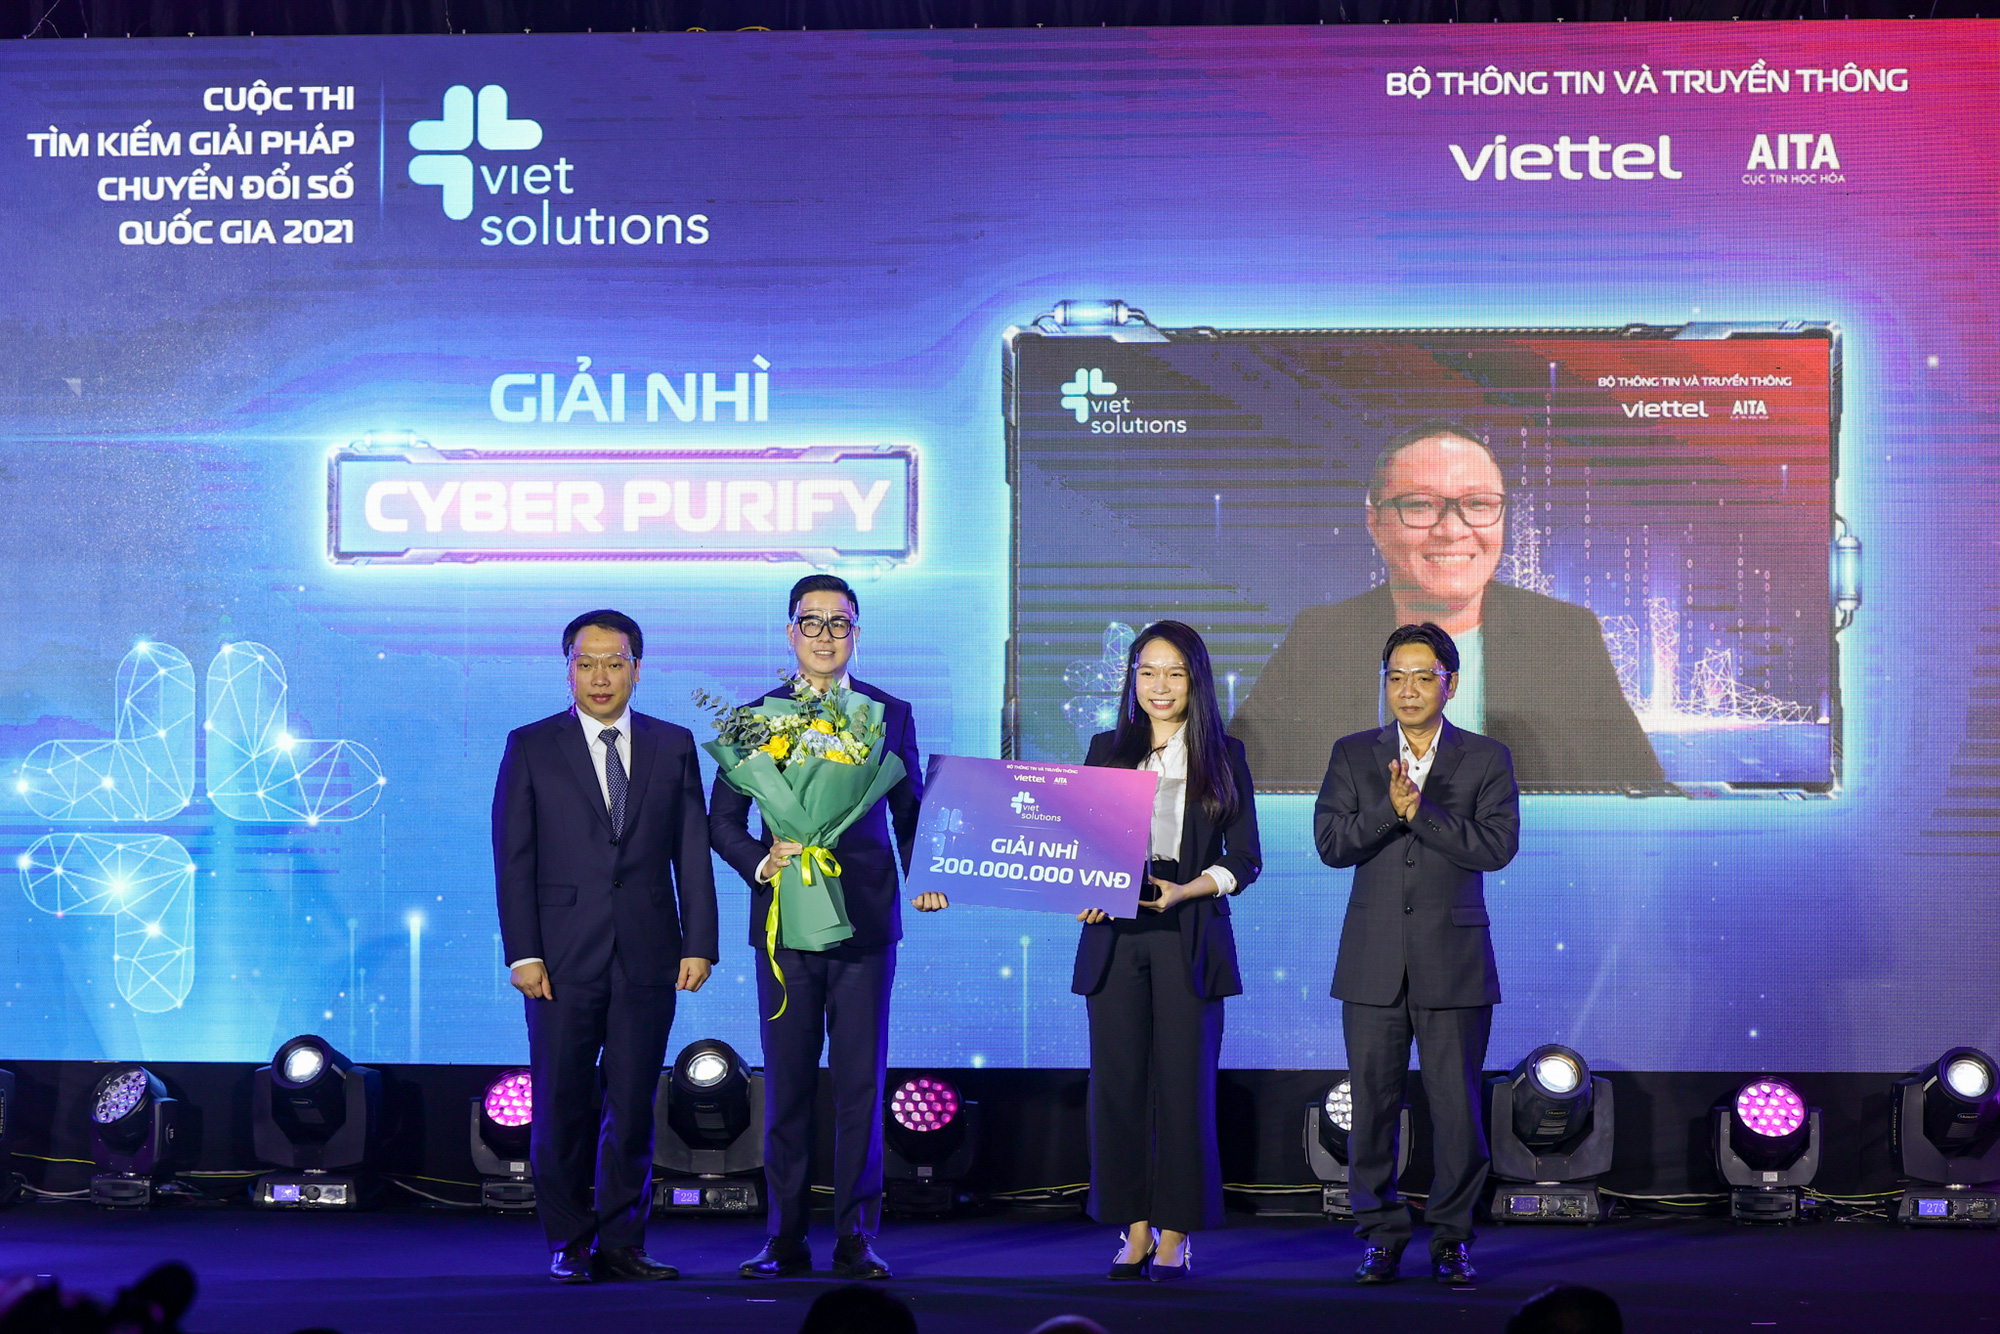 Trao giải Cuộc thi Tìm kiếm giải pháp chuyển đổi số quốc gia - Viet Solutions 2021 - Ảnh 3.